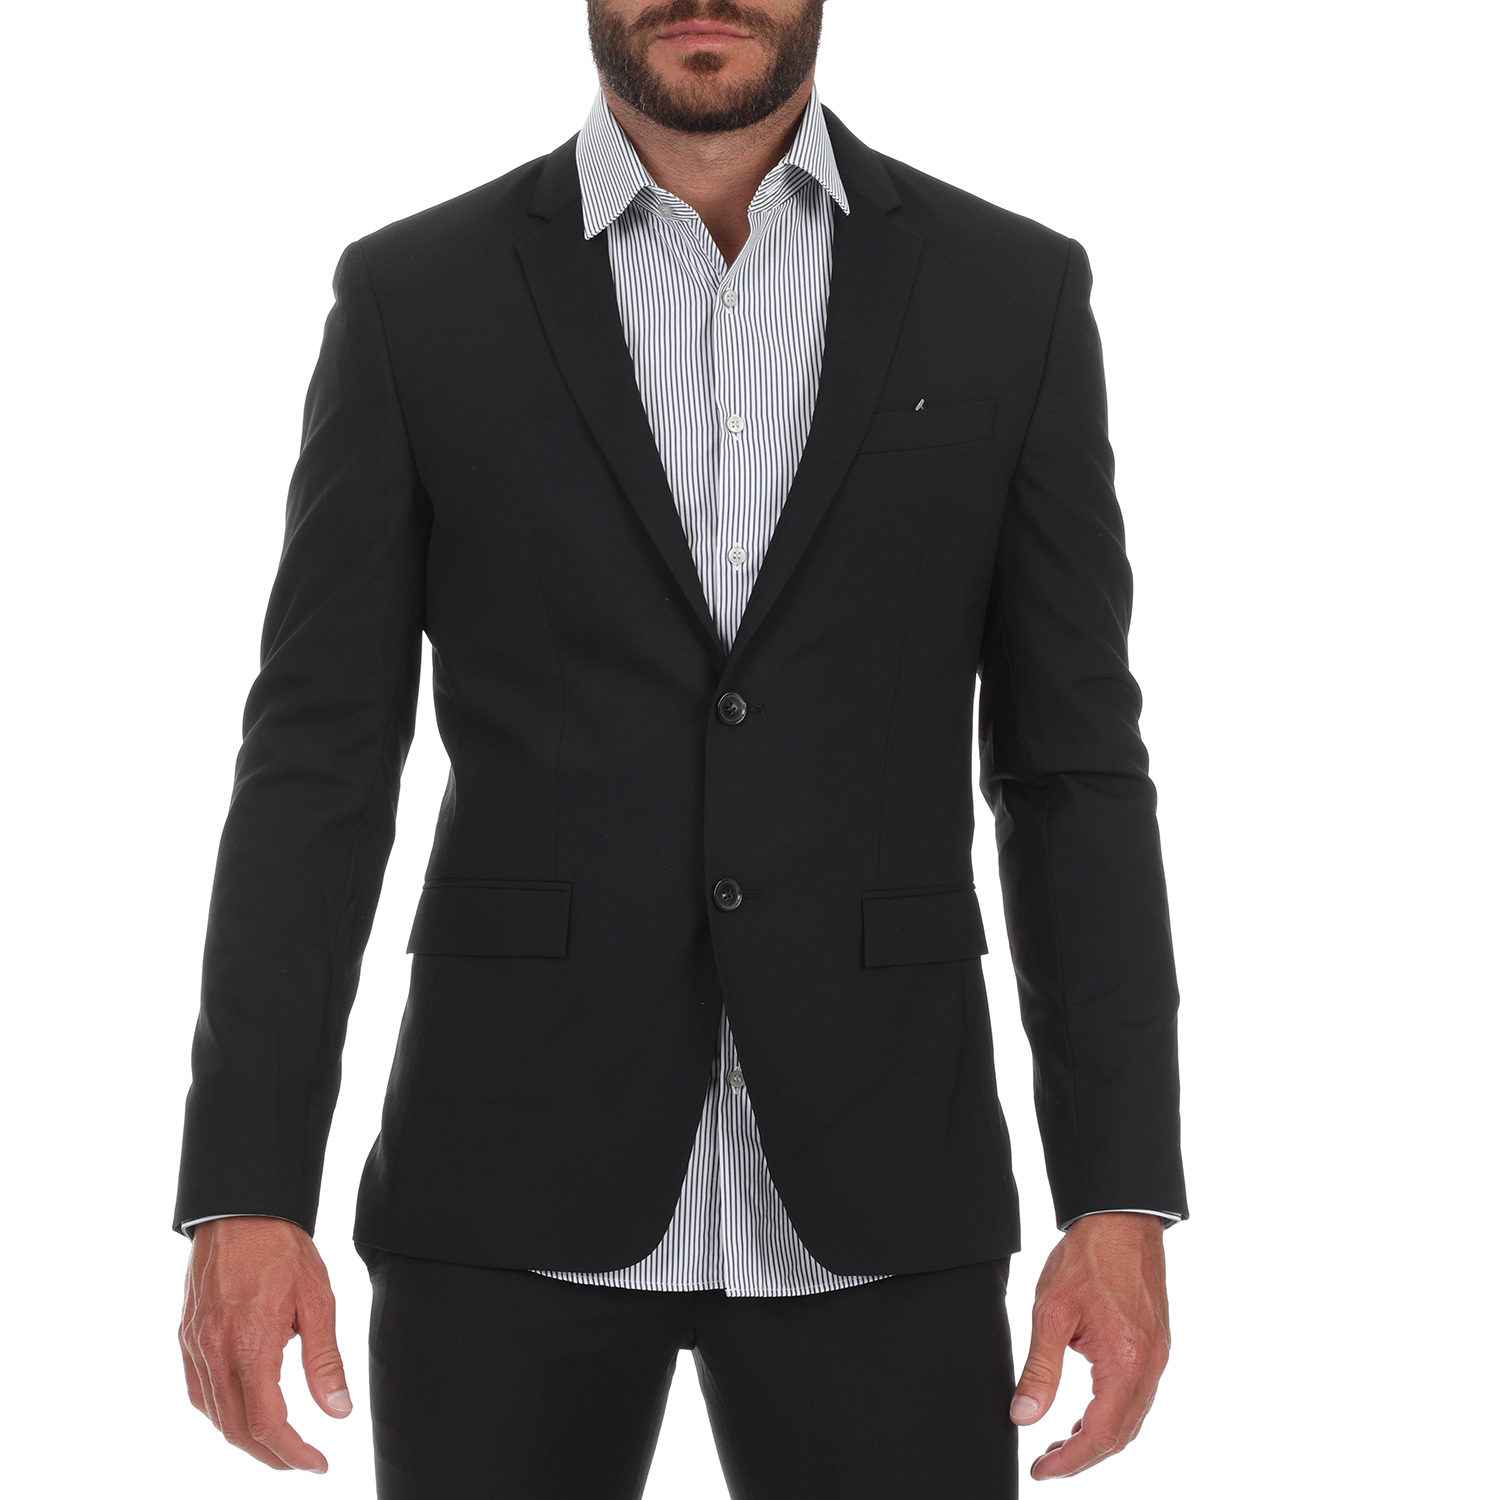 CK - Ανδρικό σακάκι CK STRETCH WOOL SLIM μαύρο Ανδρικά/Ρούχα/Πανωφόρια/Σακάκια